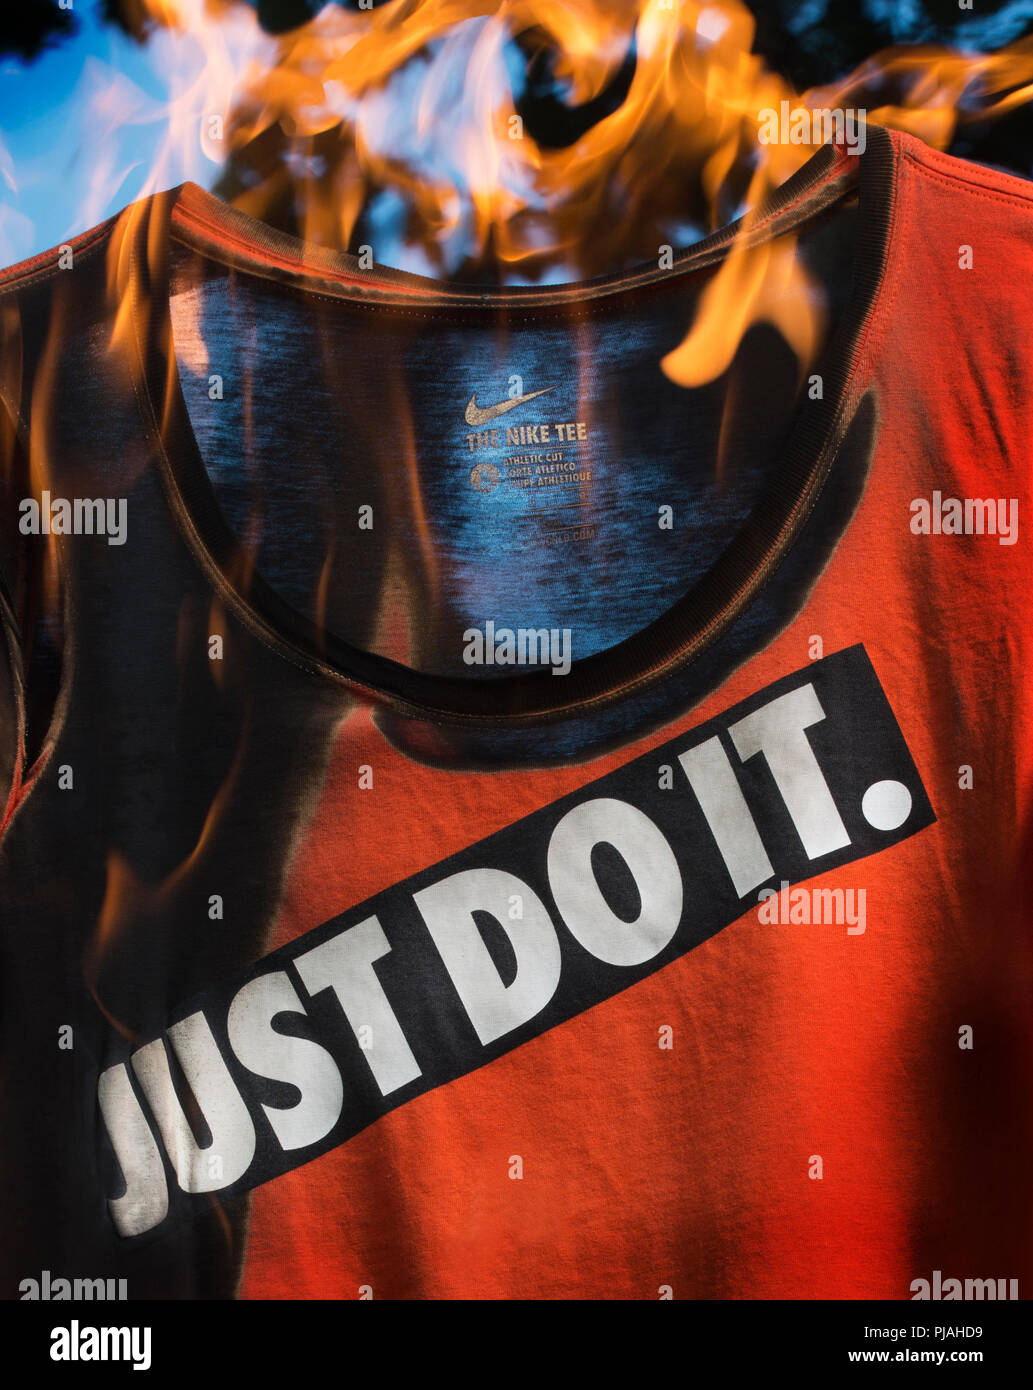 09/05/2018, Studio, Lexington, MA, USA. Flaming camiseta deportiva de Nike,  Editorial Ilustración. El 09/03/2018 Nike Inc., una compañía de ropa  deportiva mundial anunció que contará con Colin Kaepernick en el 30  aniversario